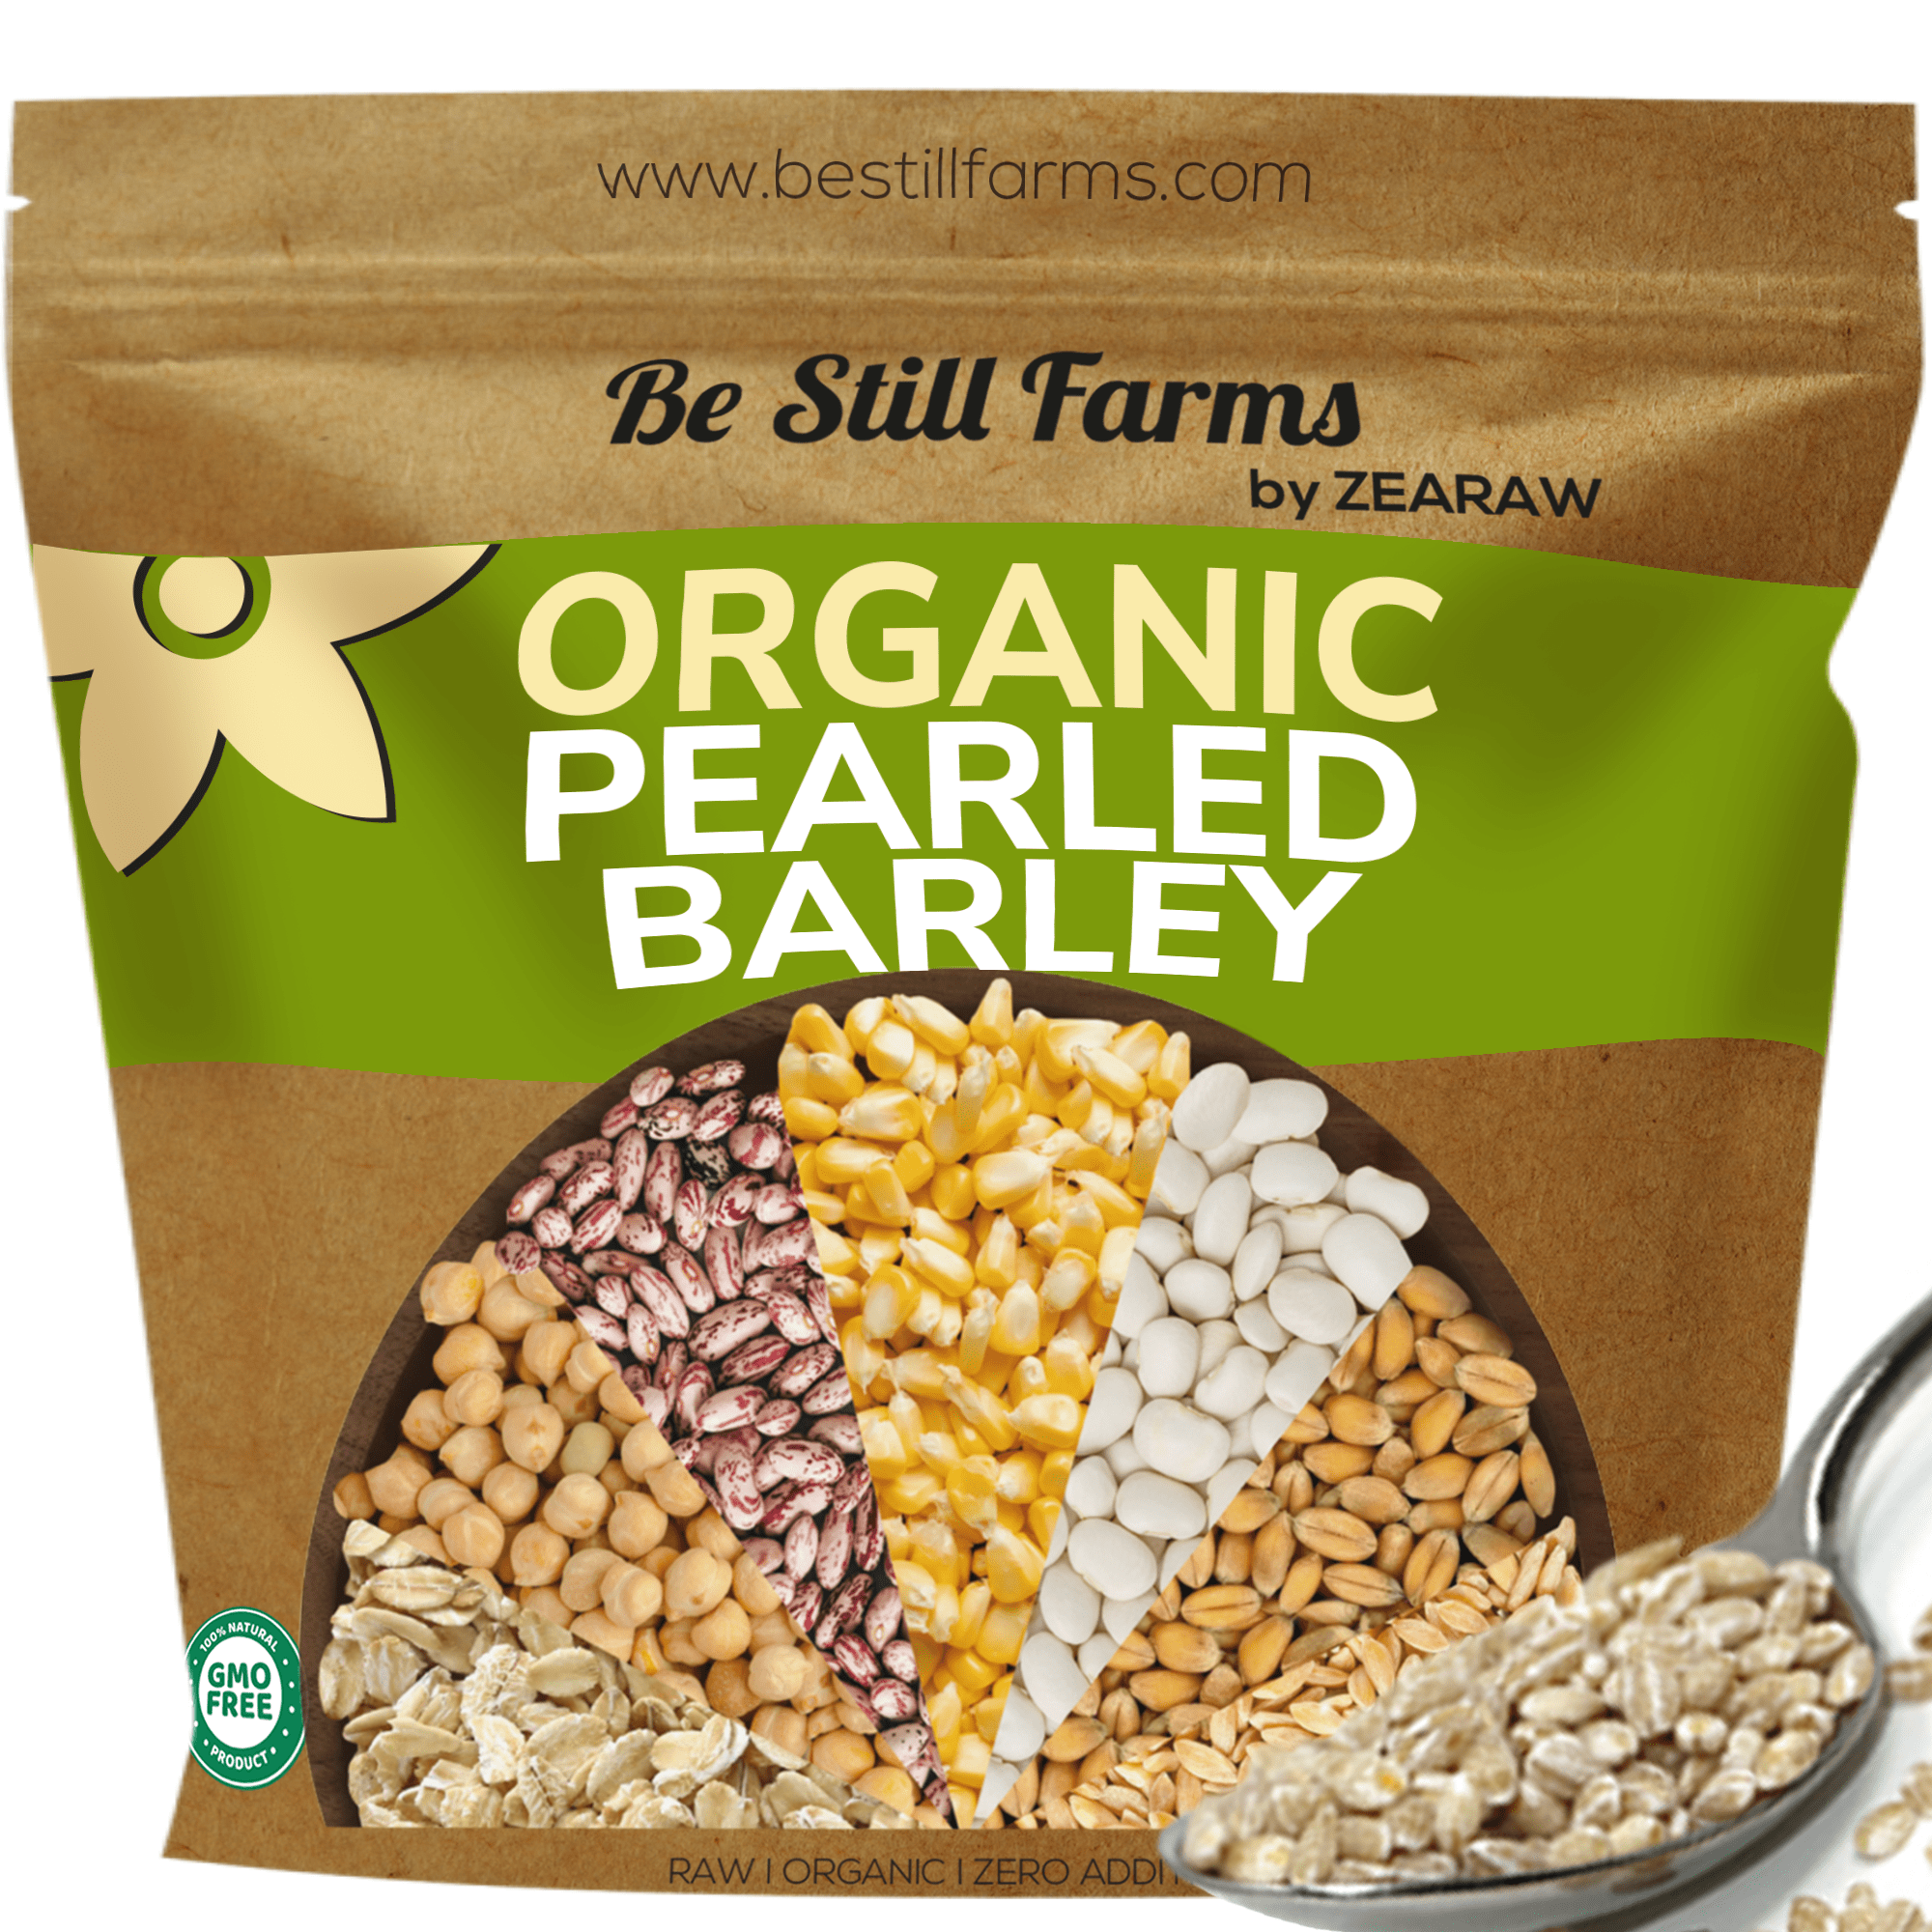 Organic pearled barley